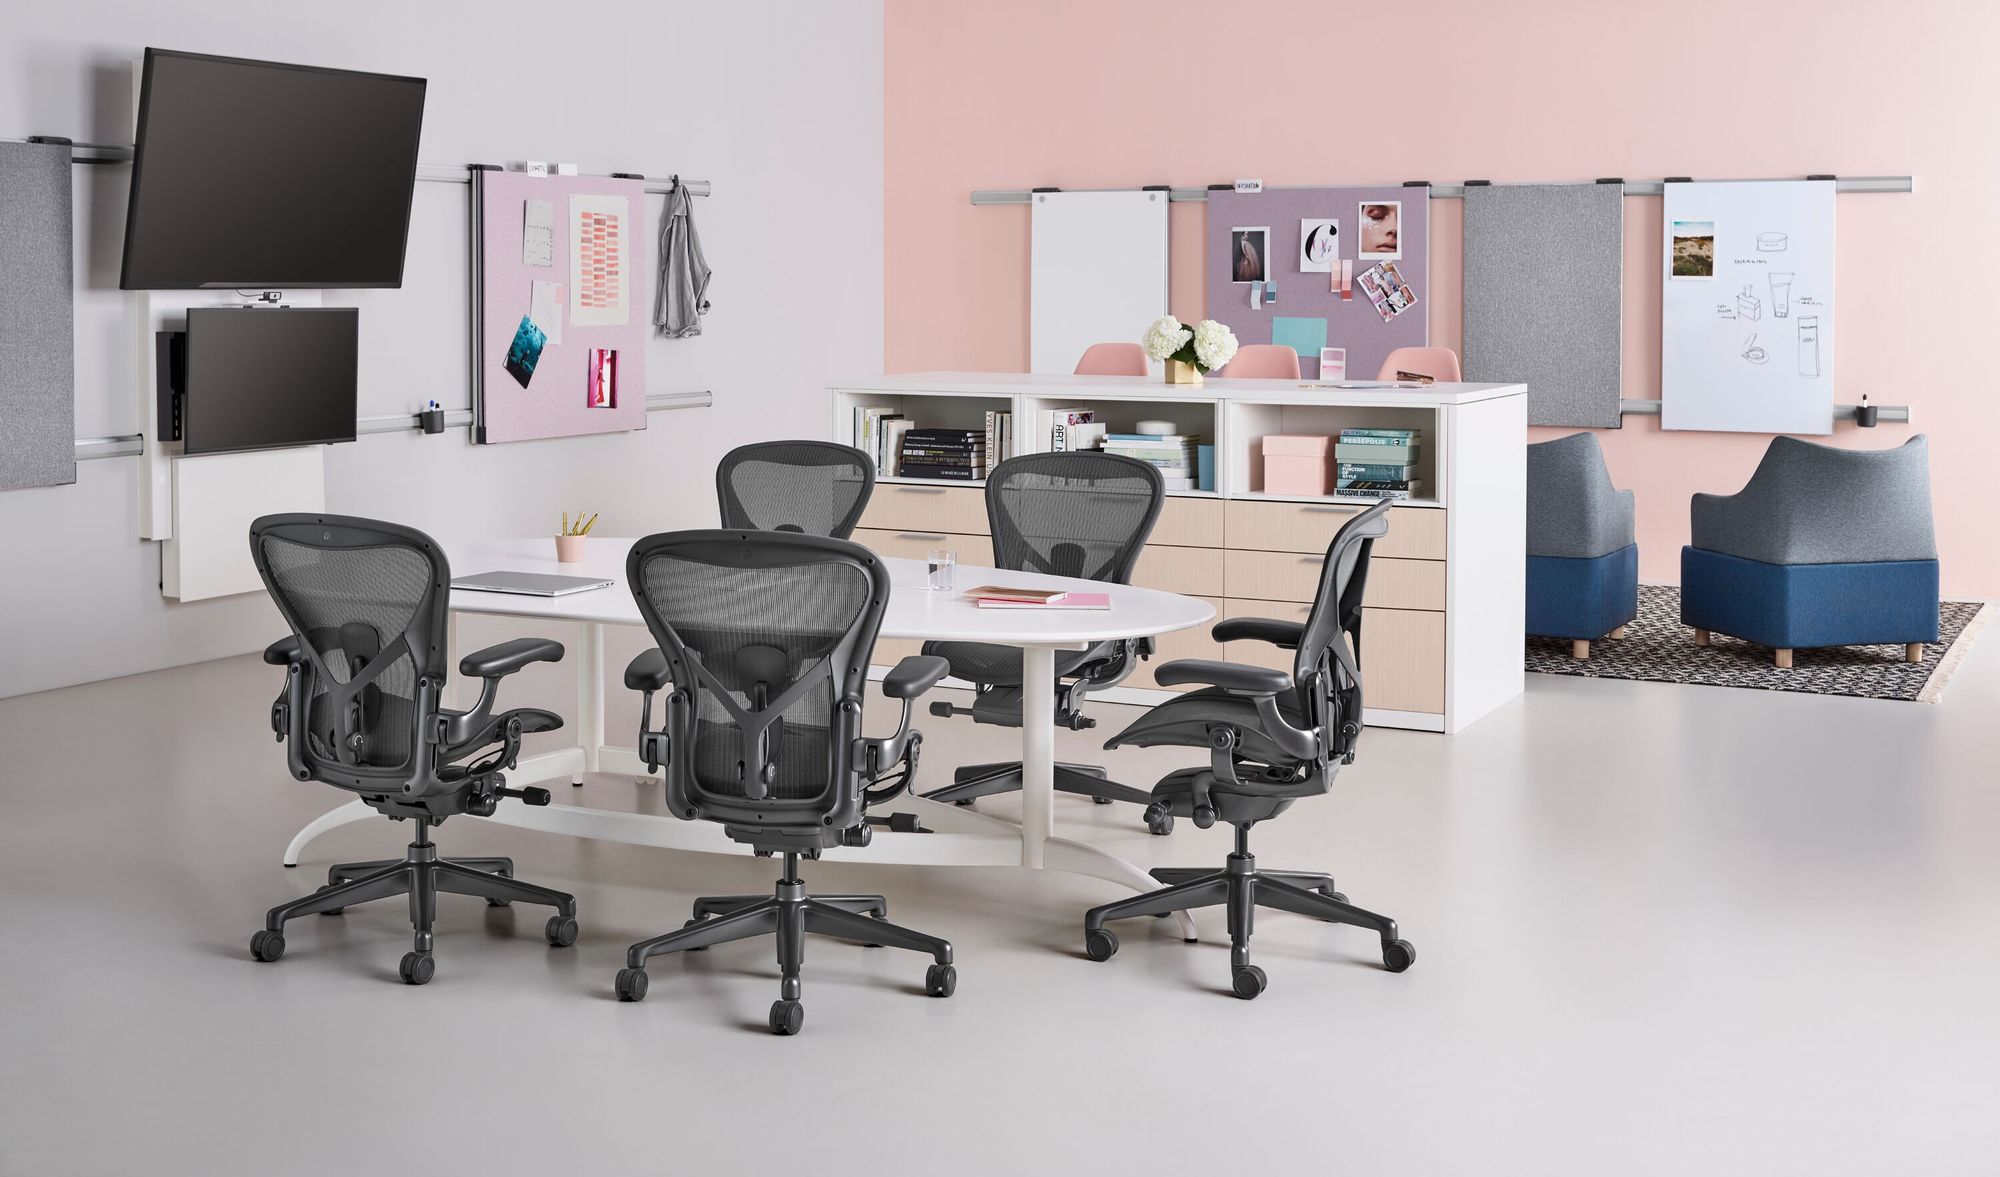 Modernes Büro mit Aeron Stühlen von Herman Miller, die um einen runden weißen Tisch angeordnet sind. Die organisierte Arbeitsfläche ist in sanften Rosa- und Grautönen gehalten, mit Akzenten durch blaue Loungesessel und strukturierte Trennwände. Stilvolle Organisationselemente und eine minimalistische Dekoration ergänzen die ästhetische und ergonomische Raumgestaltung